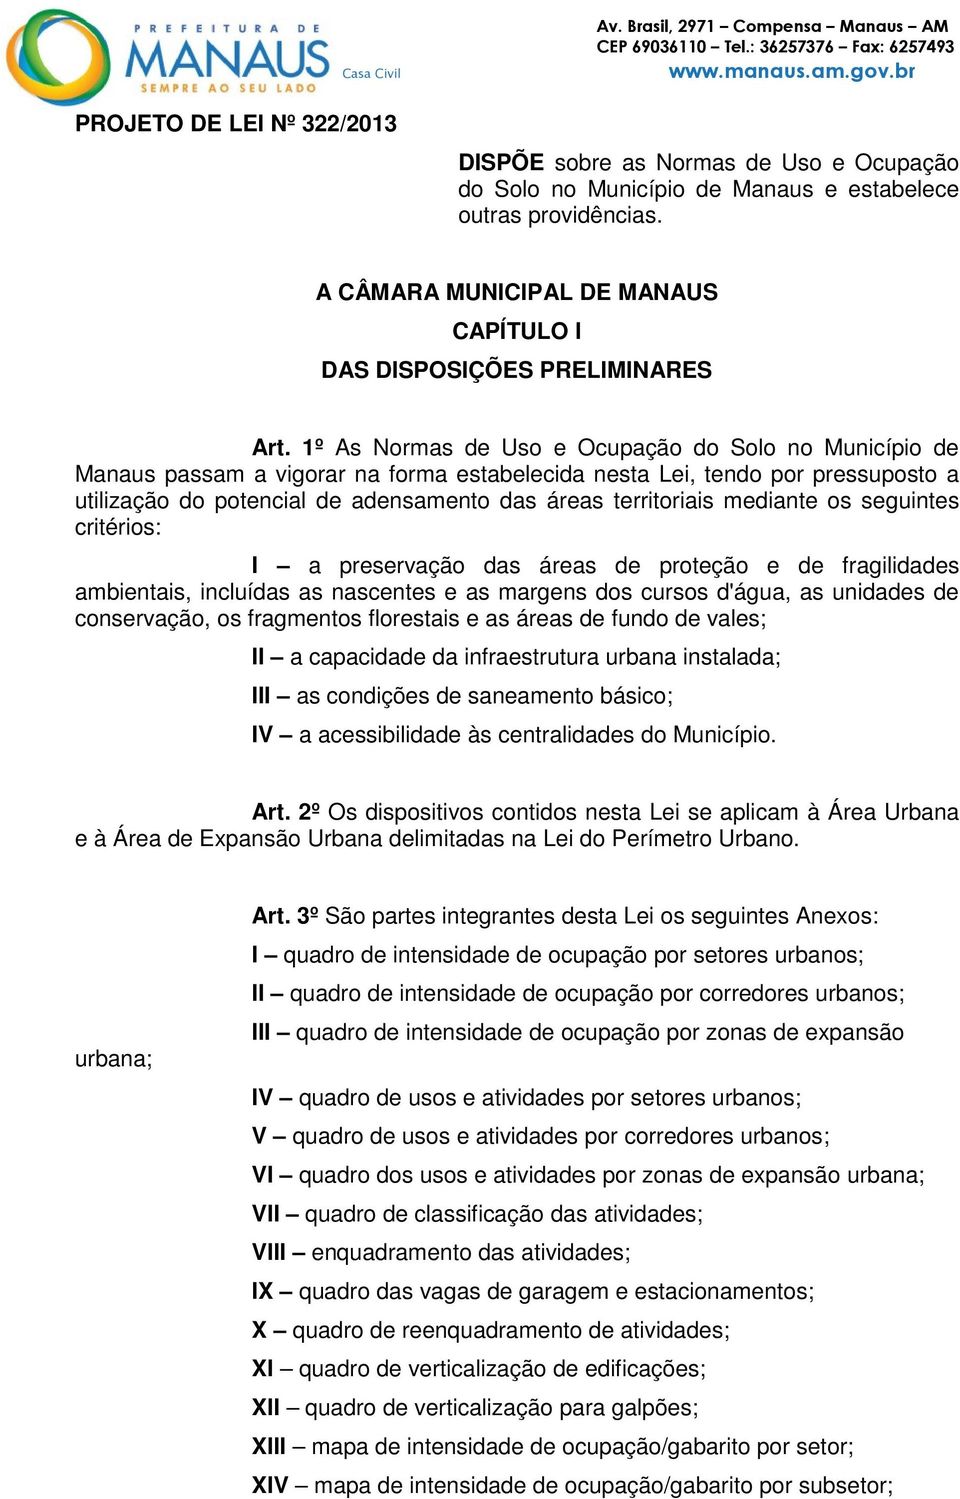 1º As Normas de Uso e Ocupação do Solo no Município de Manaus passam a vigorar na forma estabelecida nesta Lei, tendo por pressuposto a utilização do potencial de adensamento das áreas territoriais